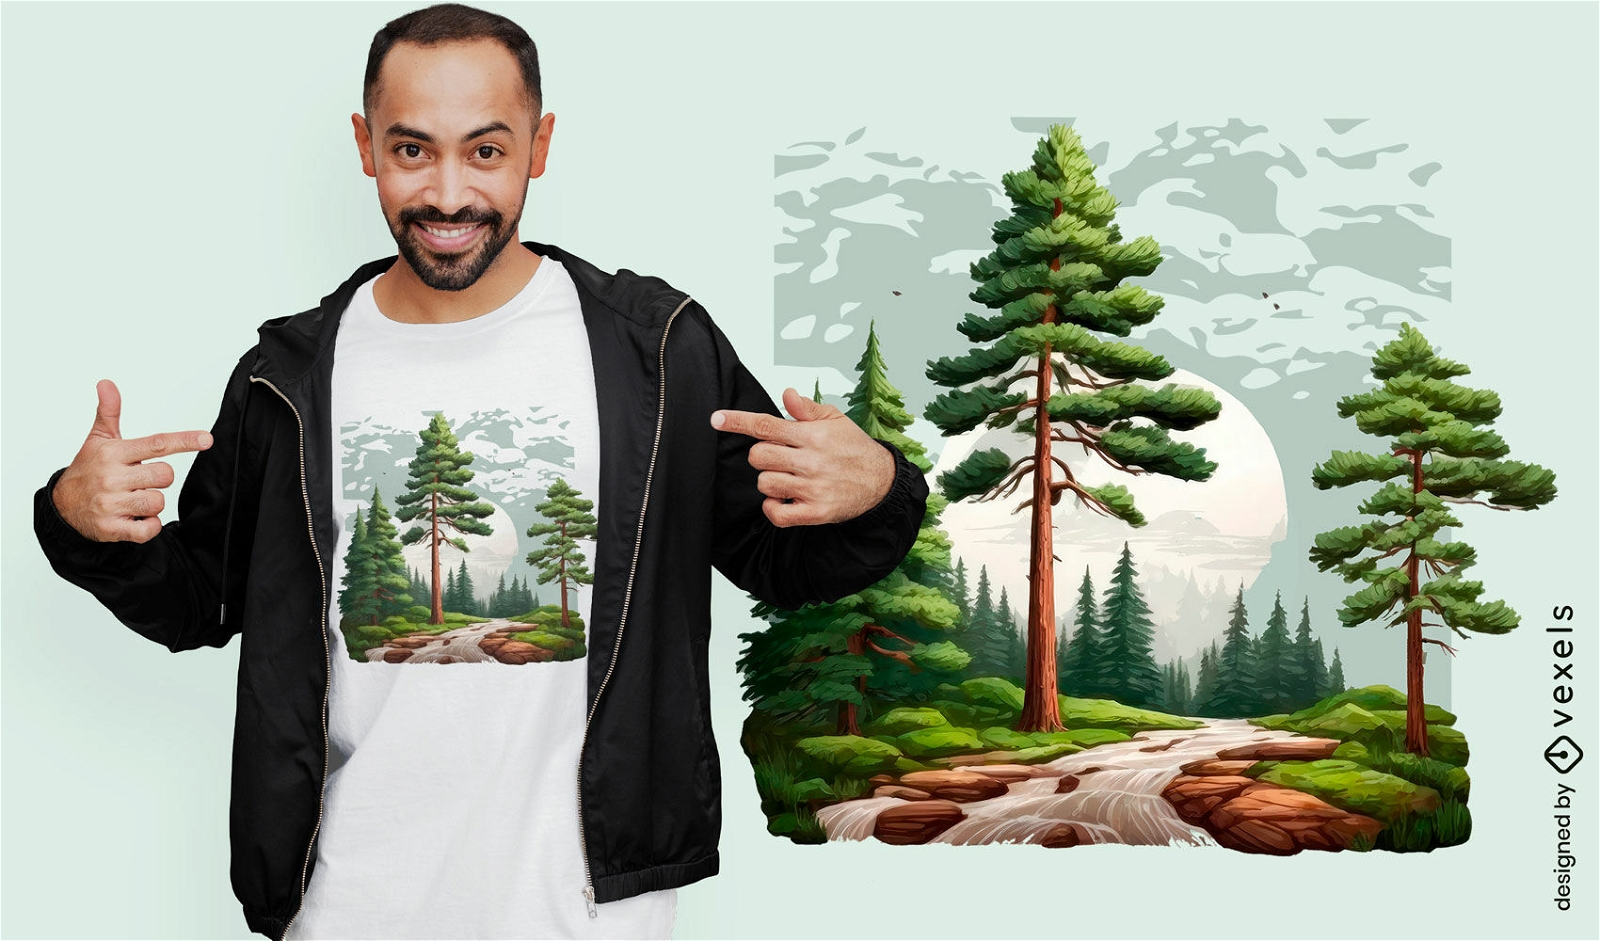 Diseño de camiseta de senderismo por el bosque y luna llena.